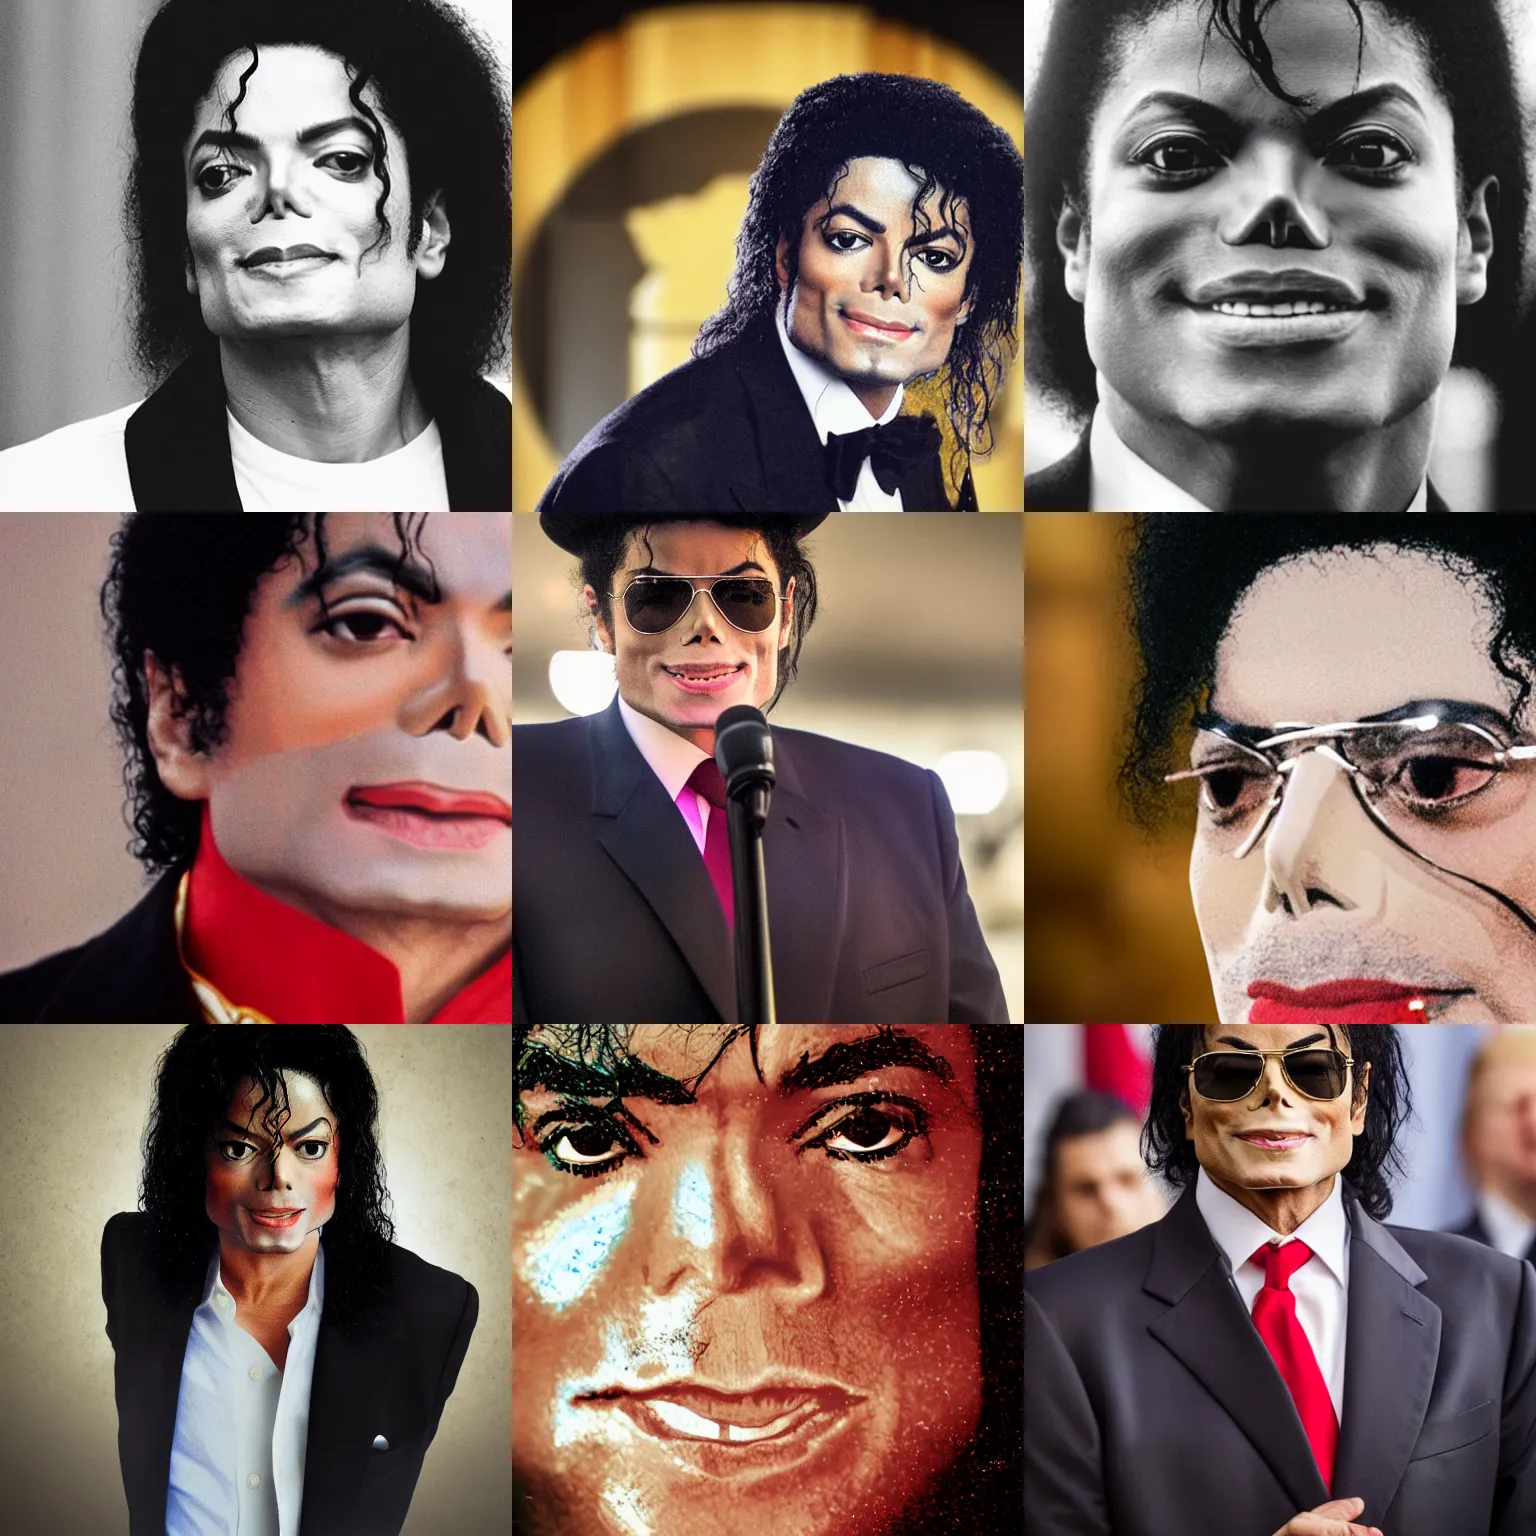 Prompt: Michael Jackson as Donald Trump, portrait photograph, depth of field, bokeh